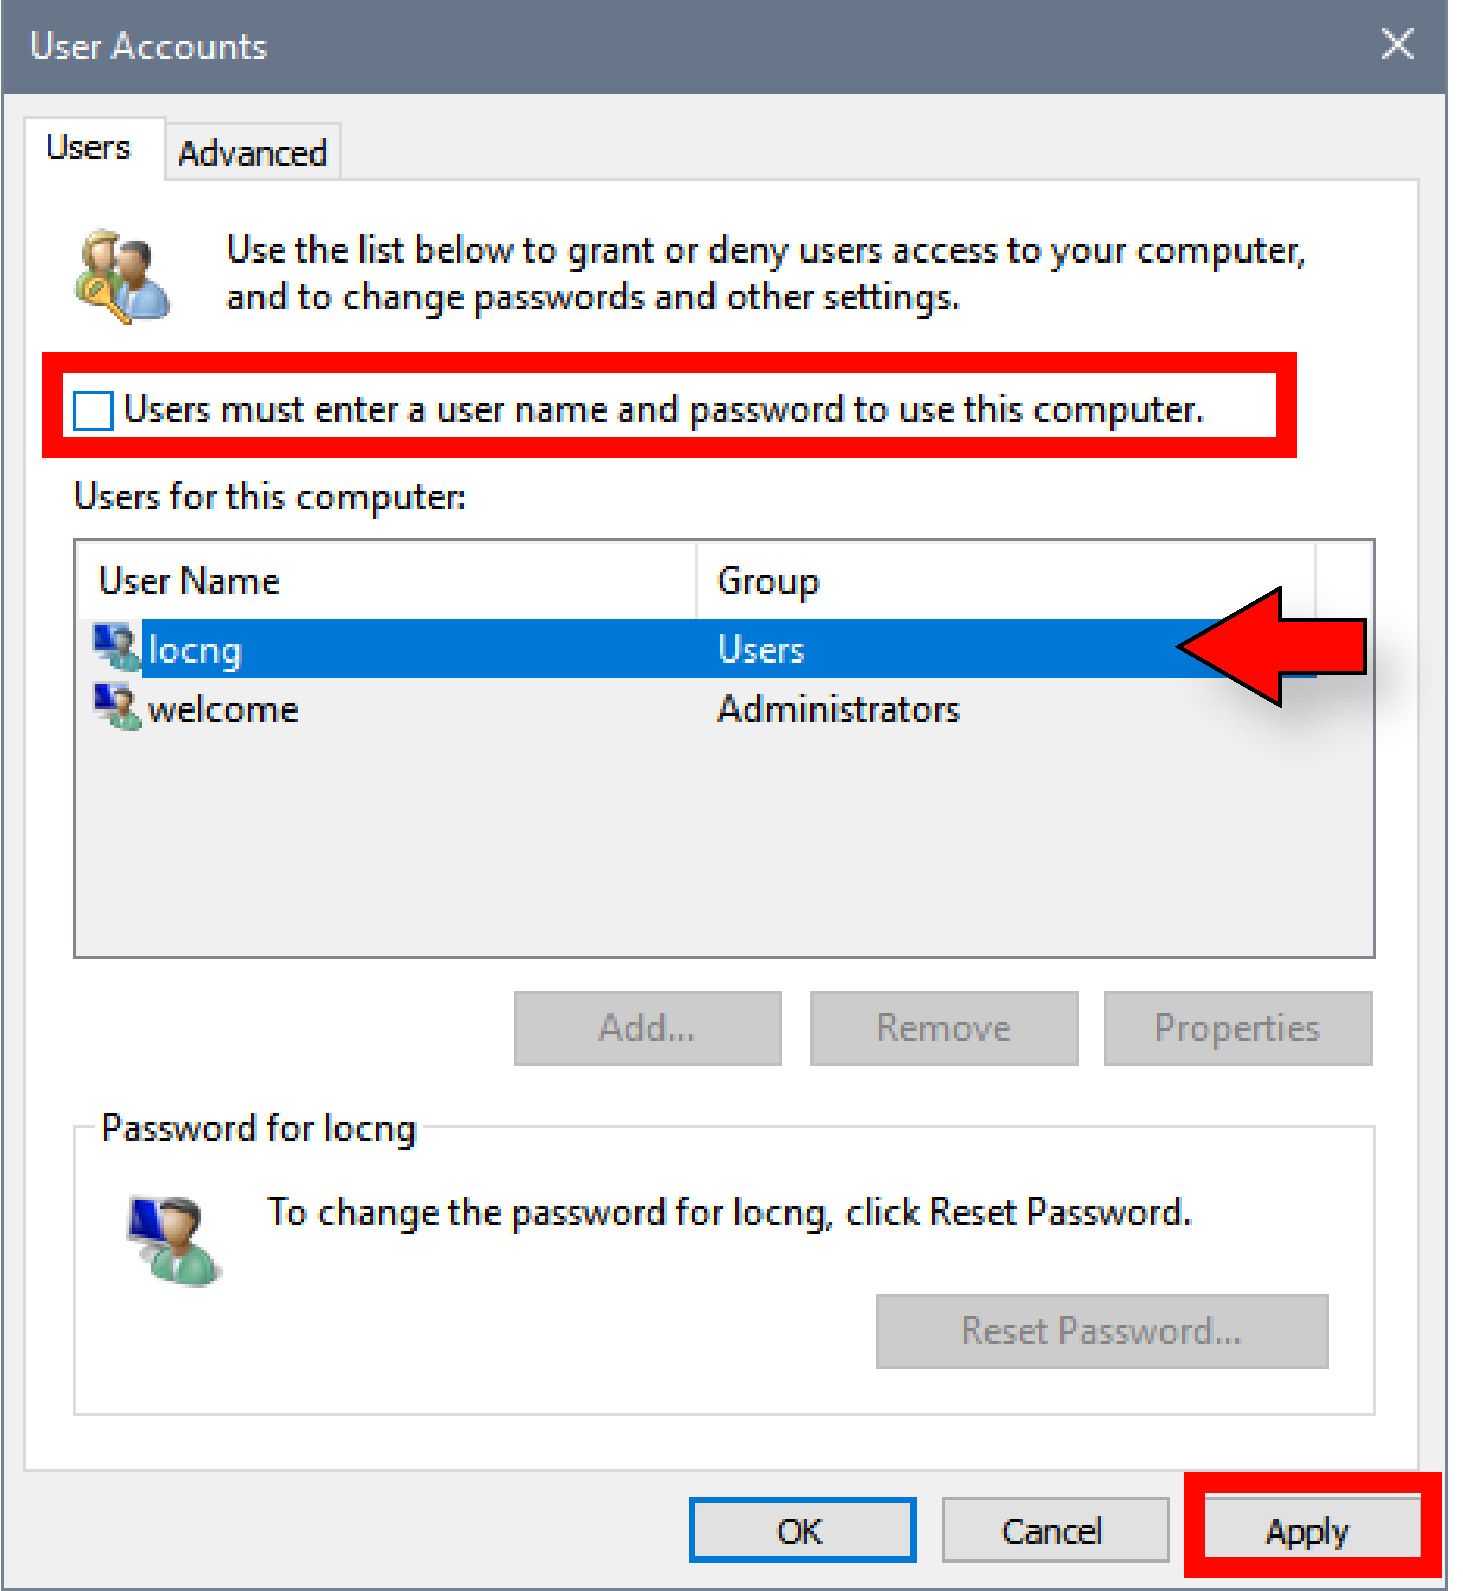 Chọn tài khoản muốn xóa mật khẩu xong bỏ tích khung Users must enter a user name and password to use this computer rồi nhấn Apply.